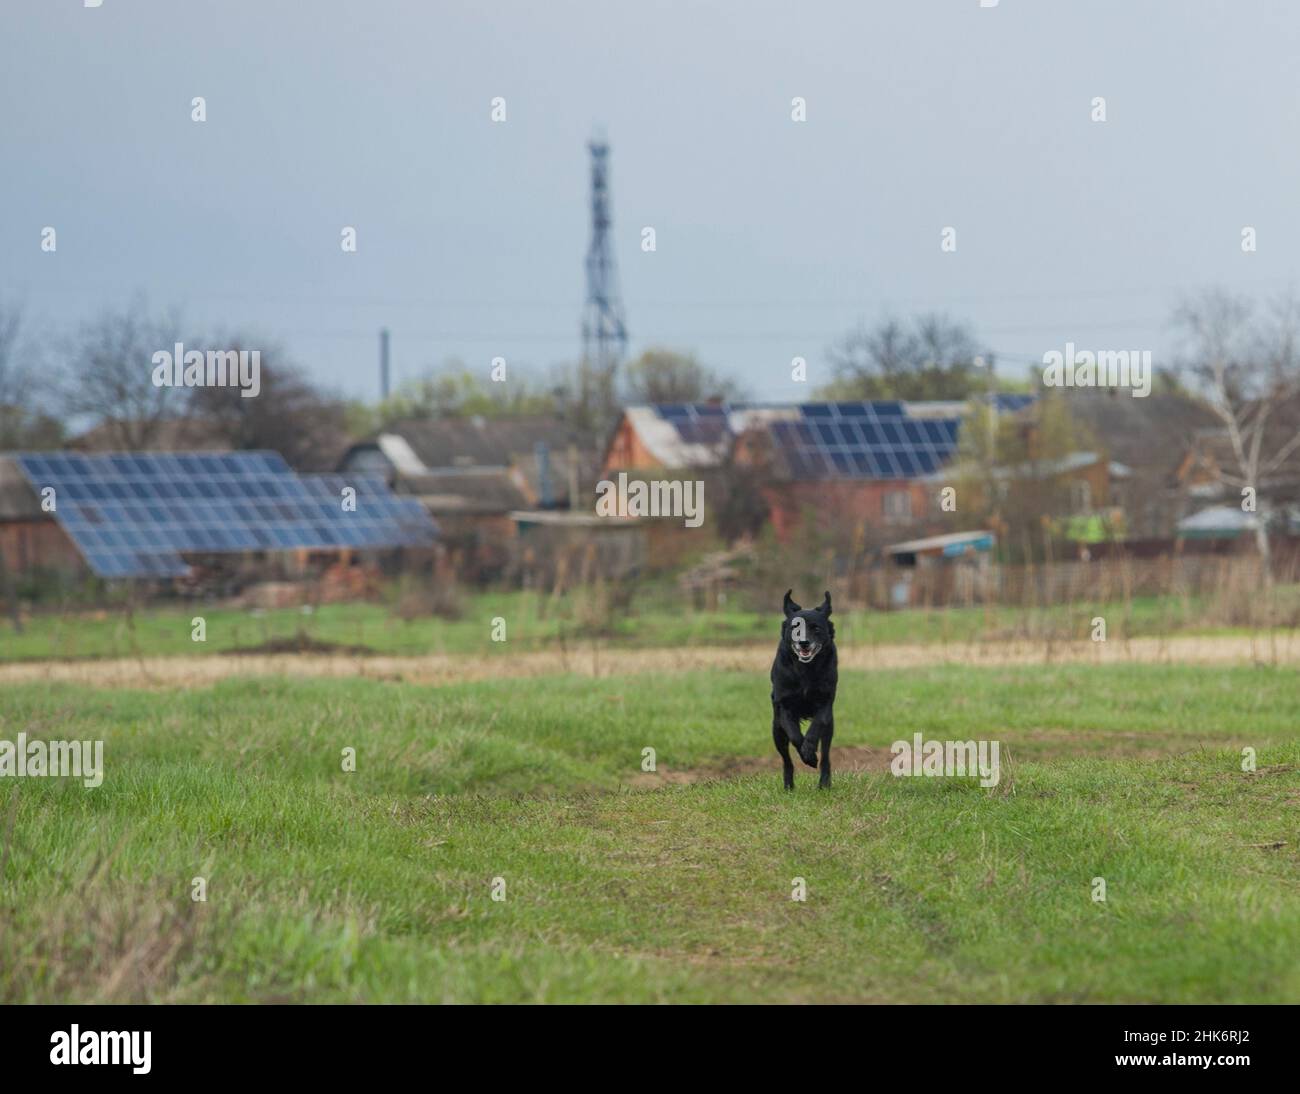 Un chien noir, courant dans la prairie, avec de petites centrales solaires privées en arrière-plan. Banque D'Images